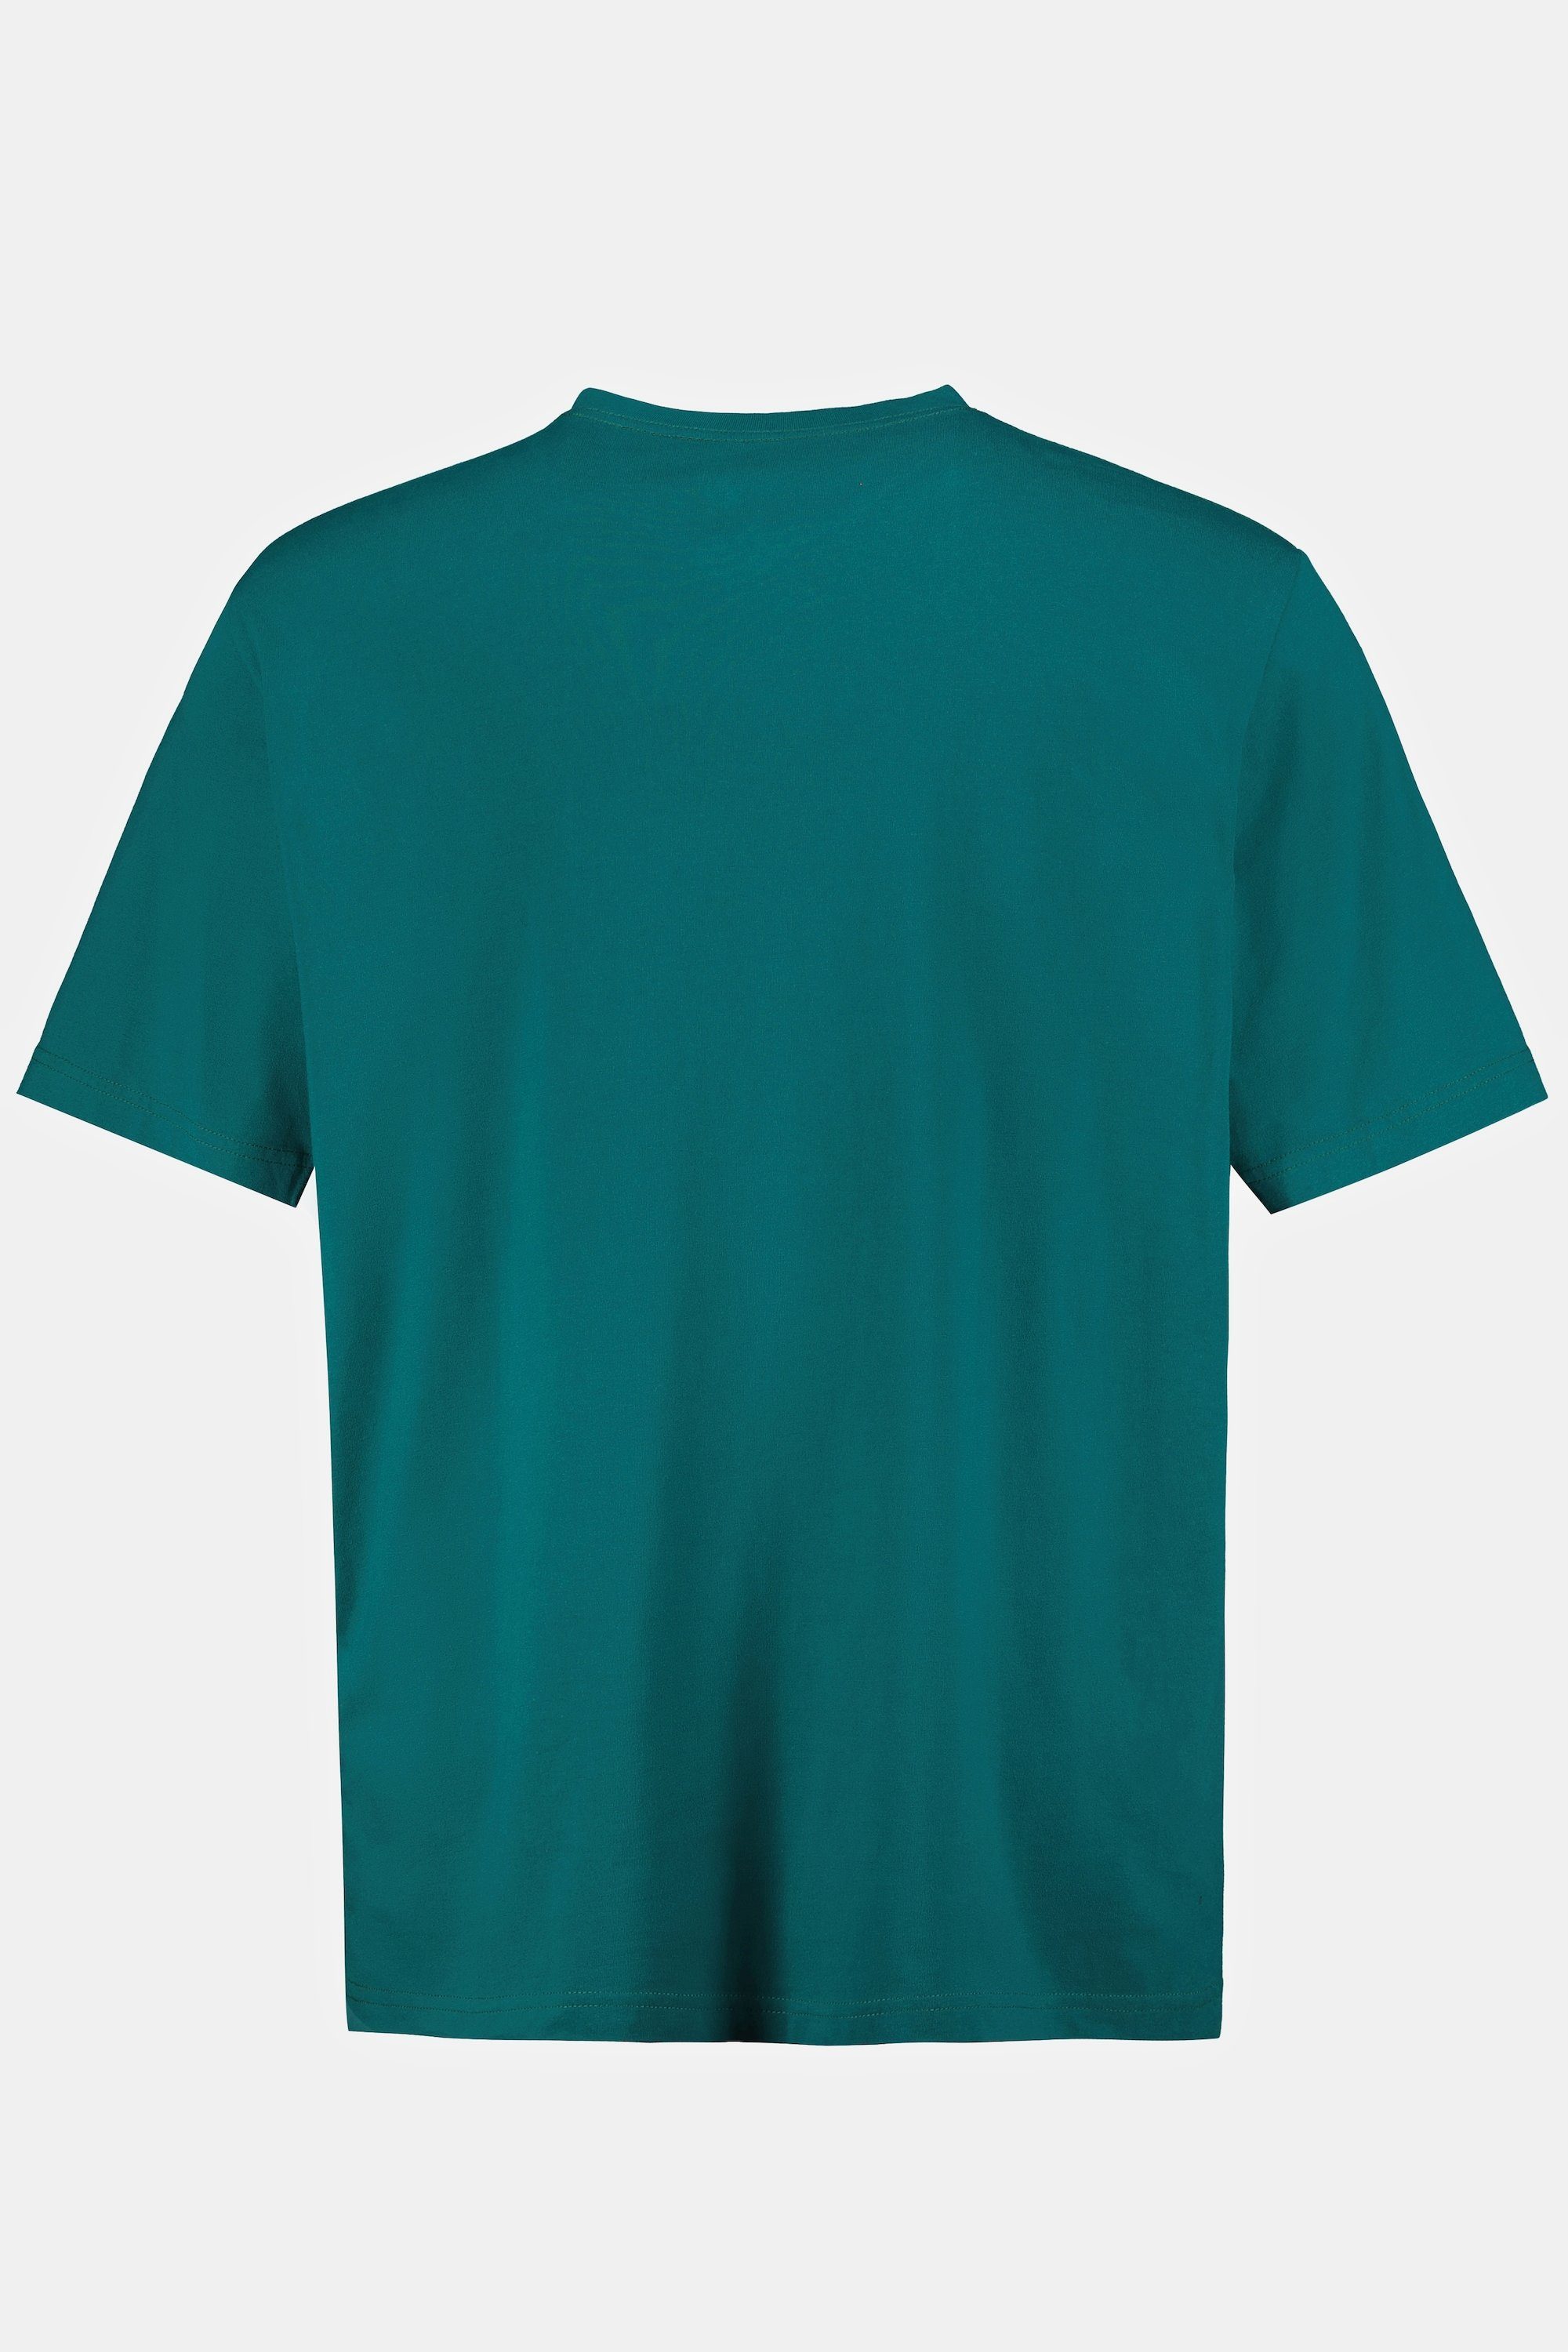 JP1880 8XL T-Shirt V-Ausschnitt bis Basic T-Shirt petrol